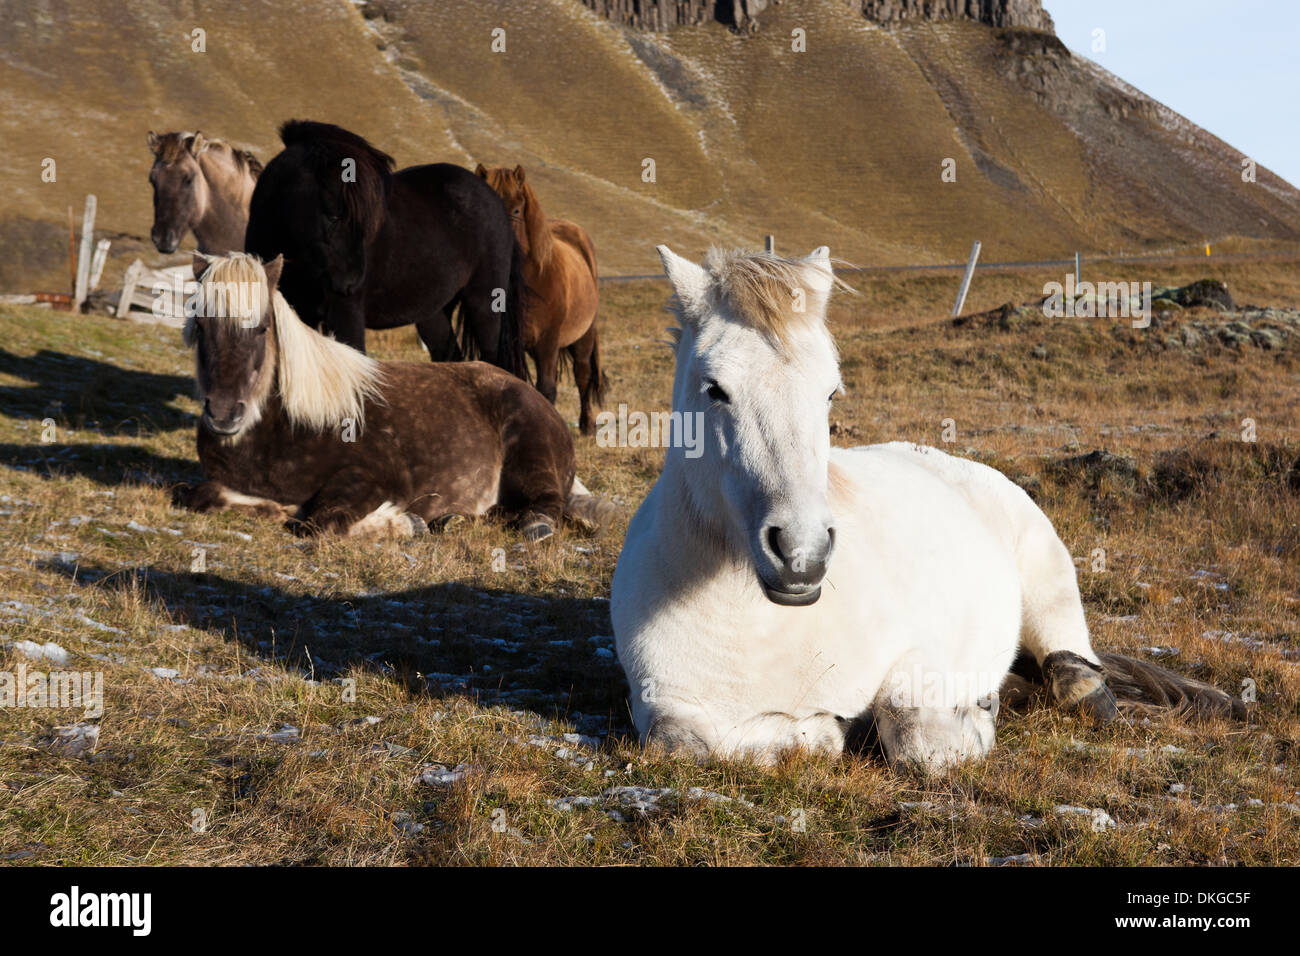 Icelandic Wild Horse, Iceland Stock Photo